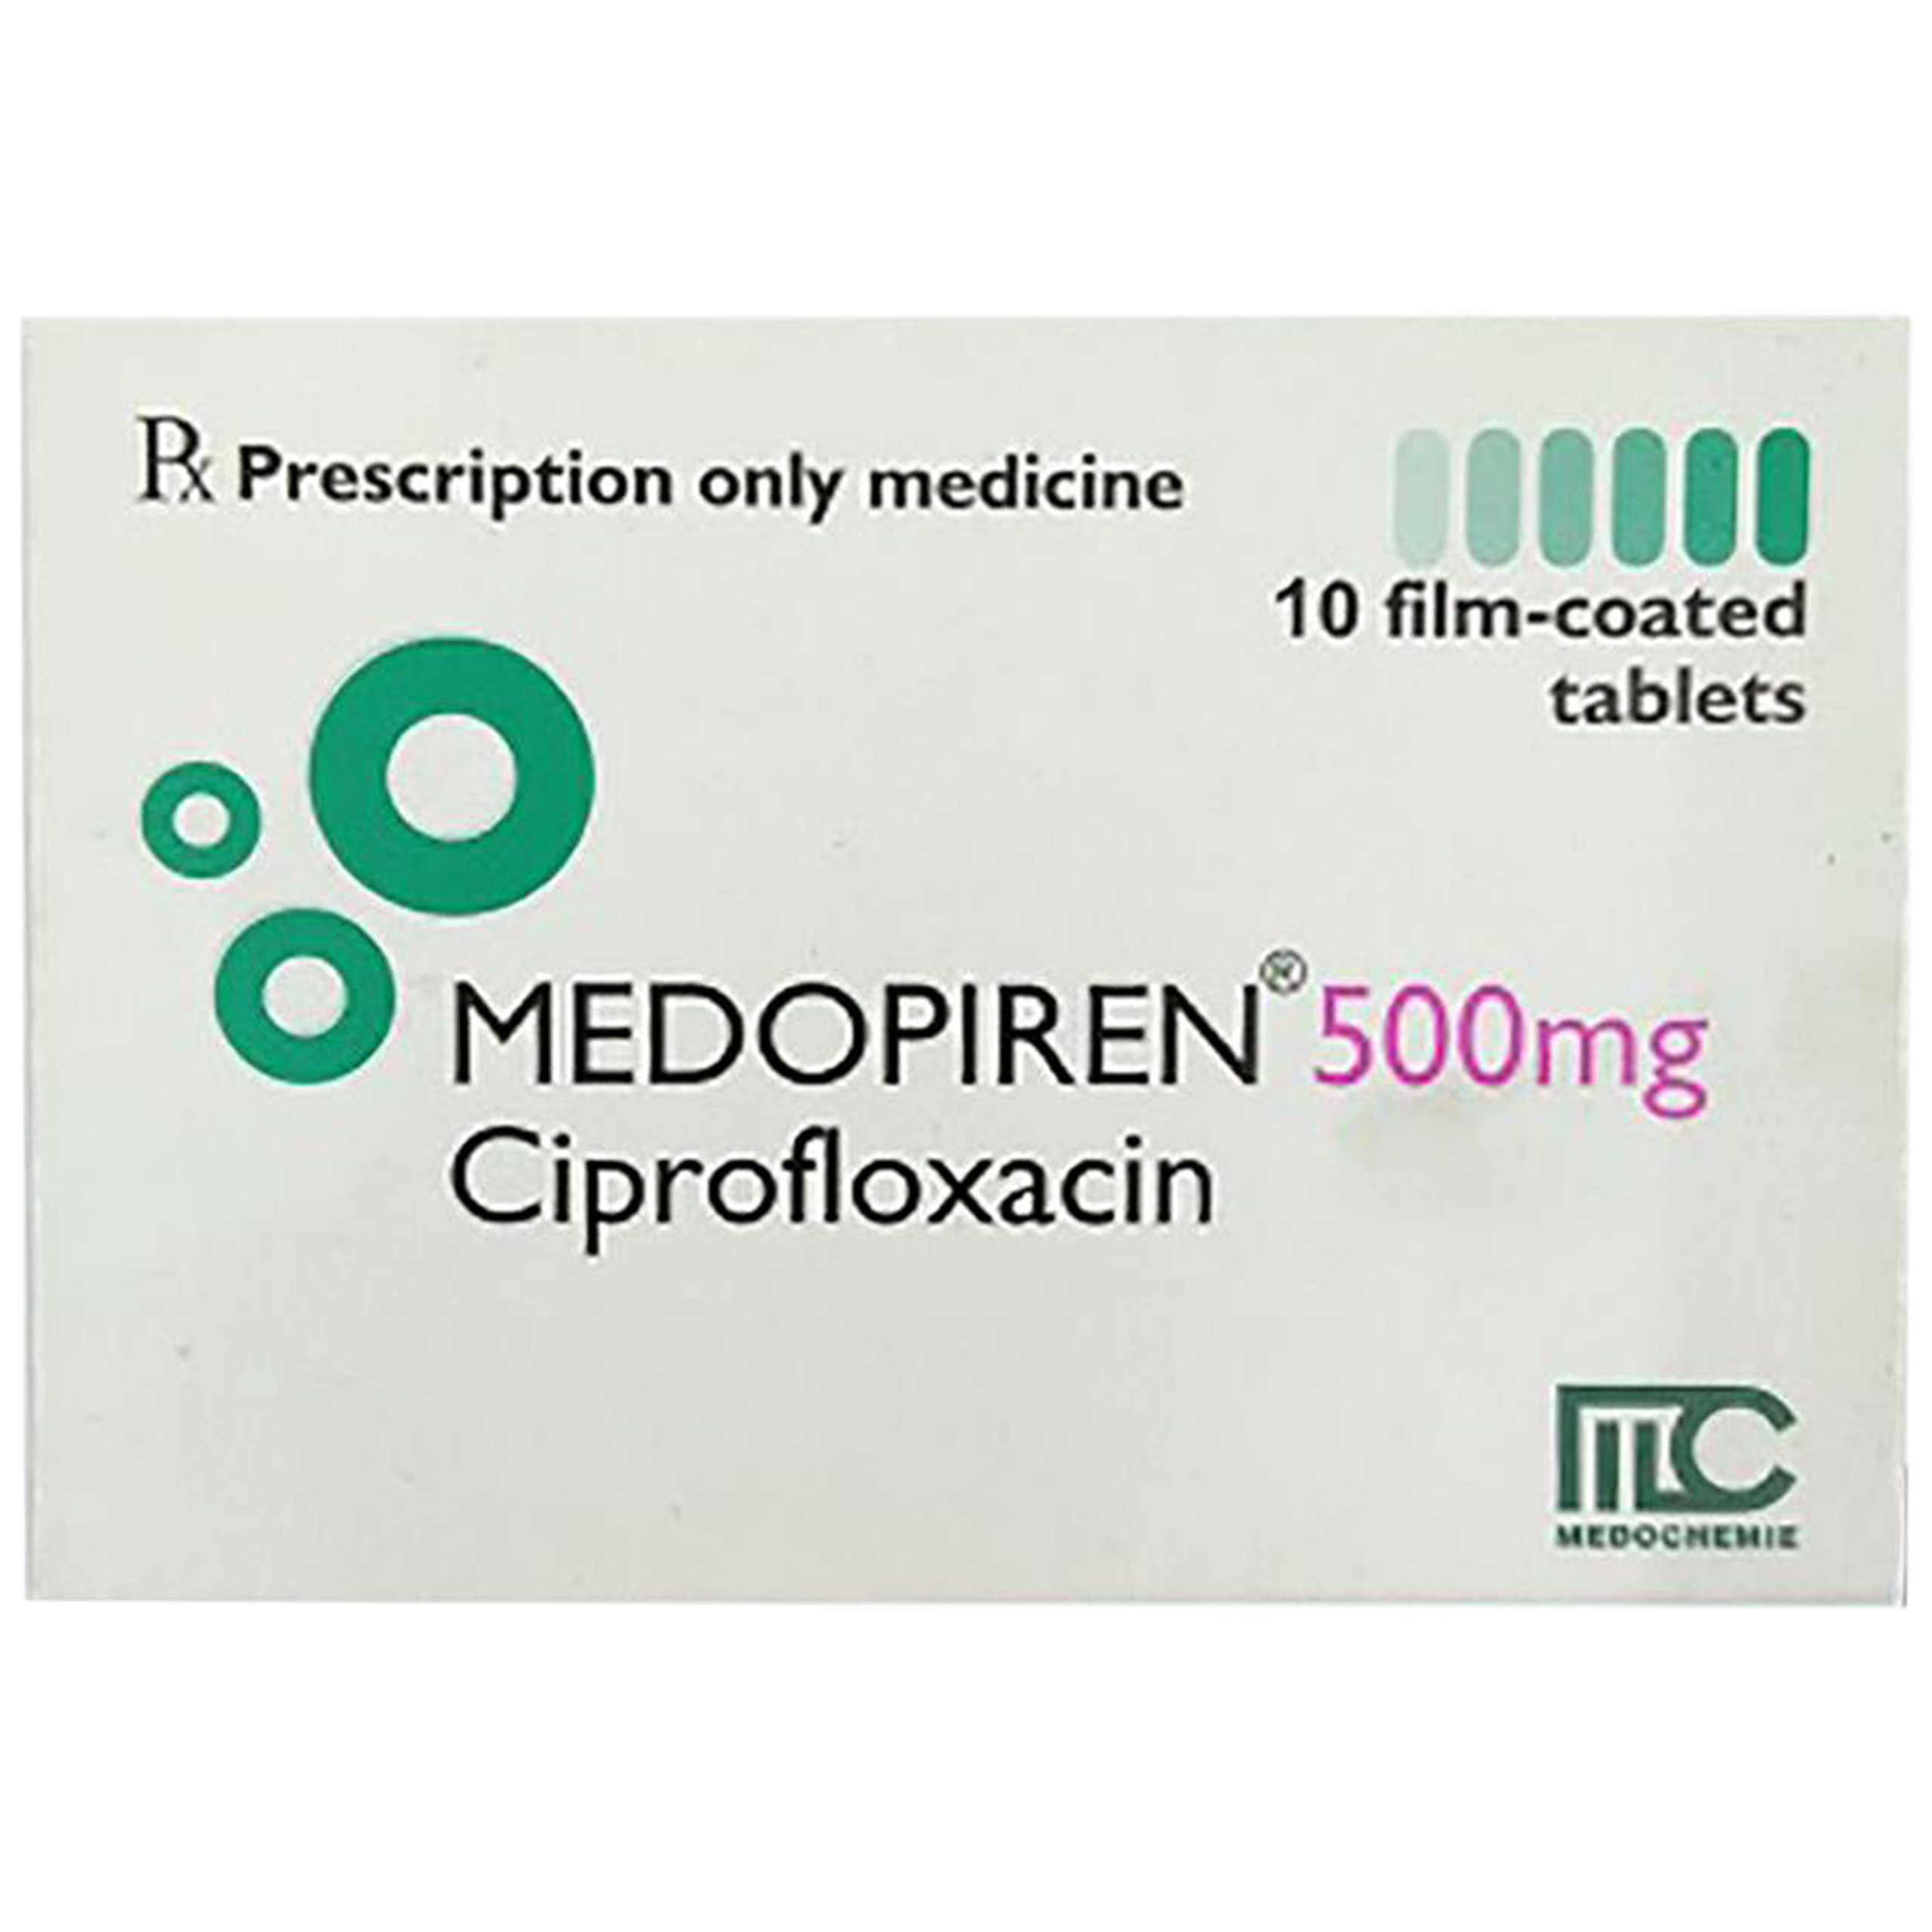 Thuốc Medopiren 500mg điều trị nhiễm khuẩn (1 vỉ x 10 viên)